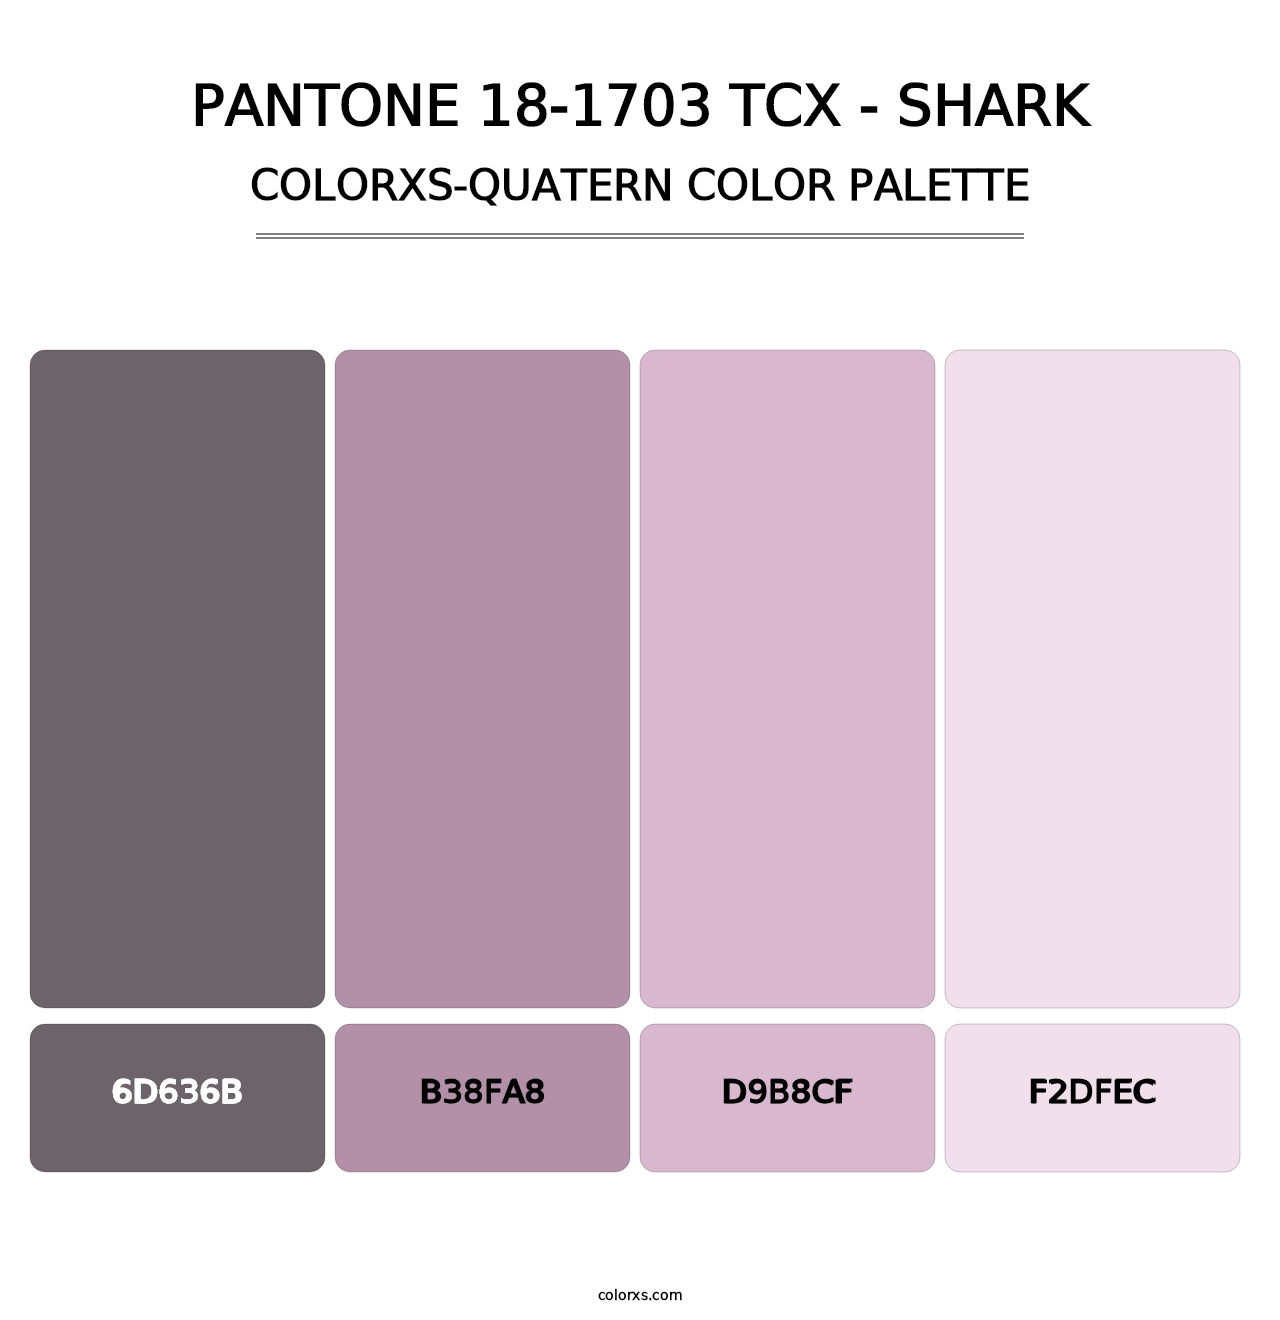 PANTONE 18-1703 TCX - Shark - Colorxs Quatern Palette